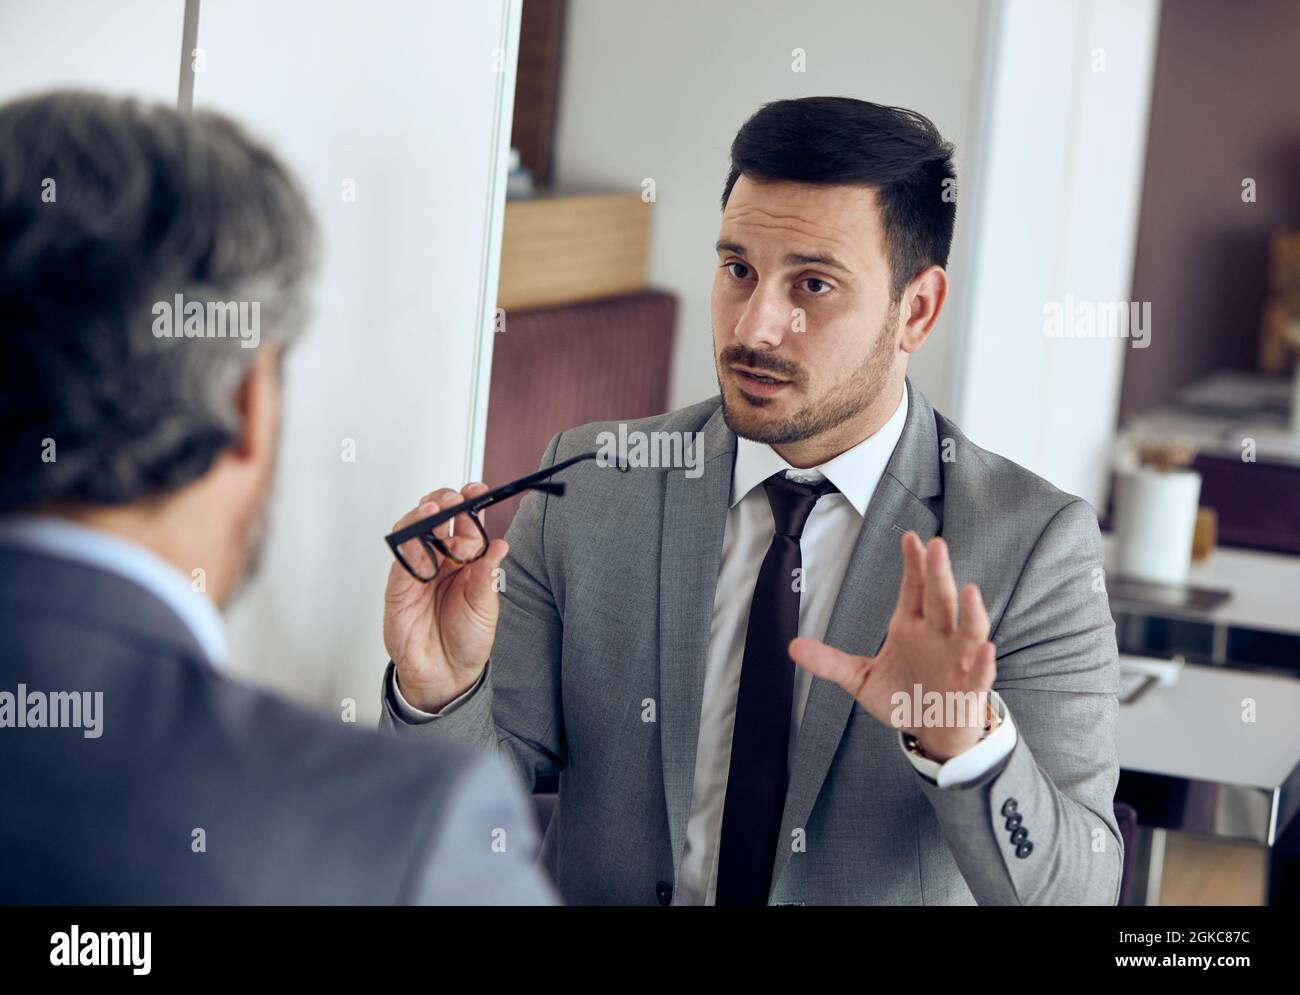 business man discussion portrait break communication Stock Photo